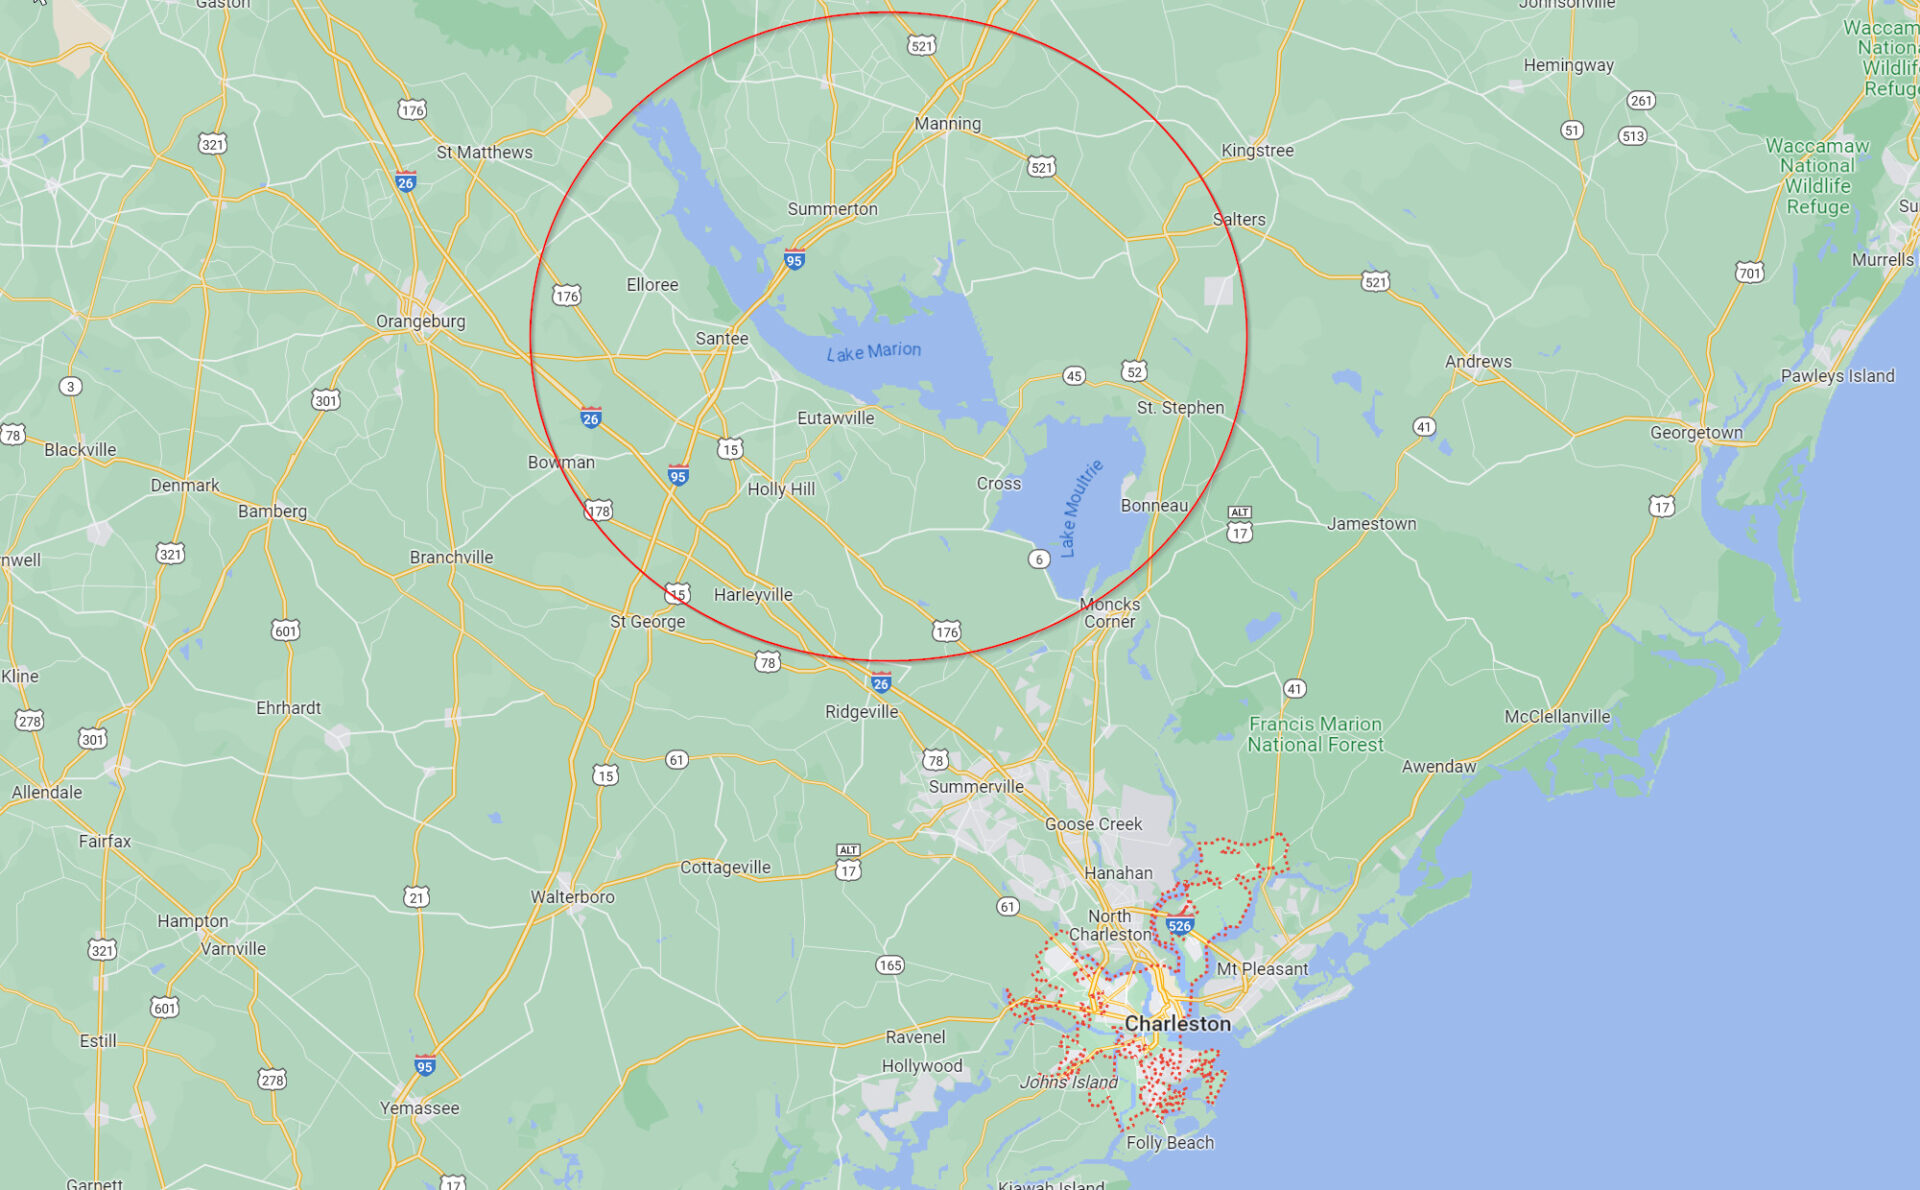 Le F-35 a été perdu près de la ville de Charleston